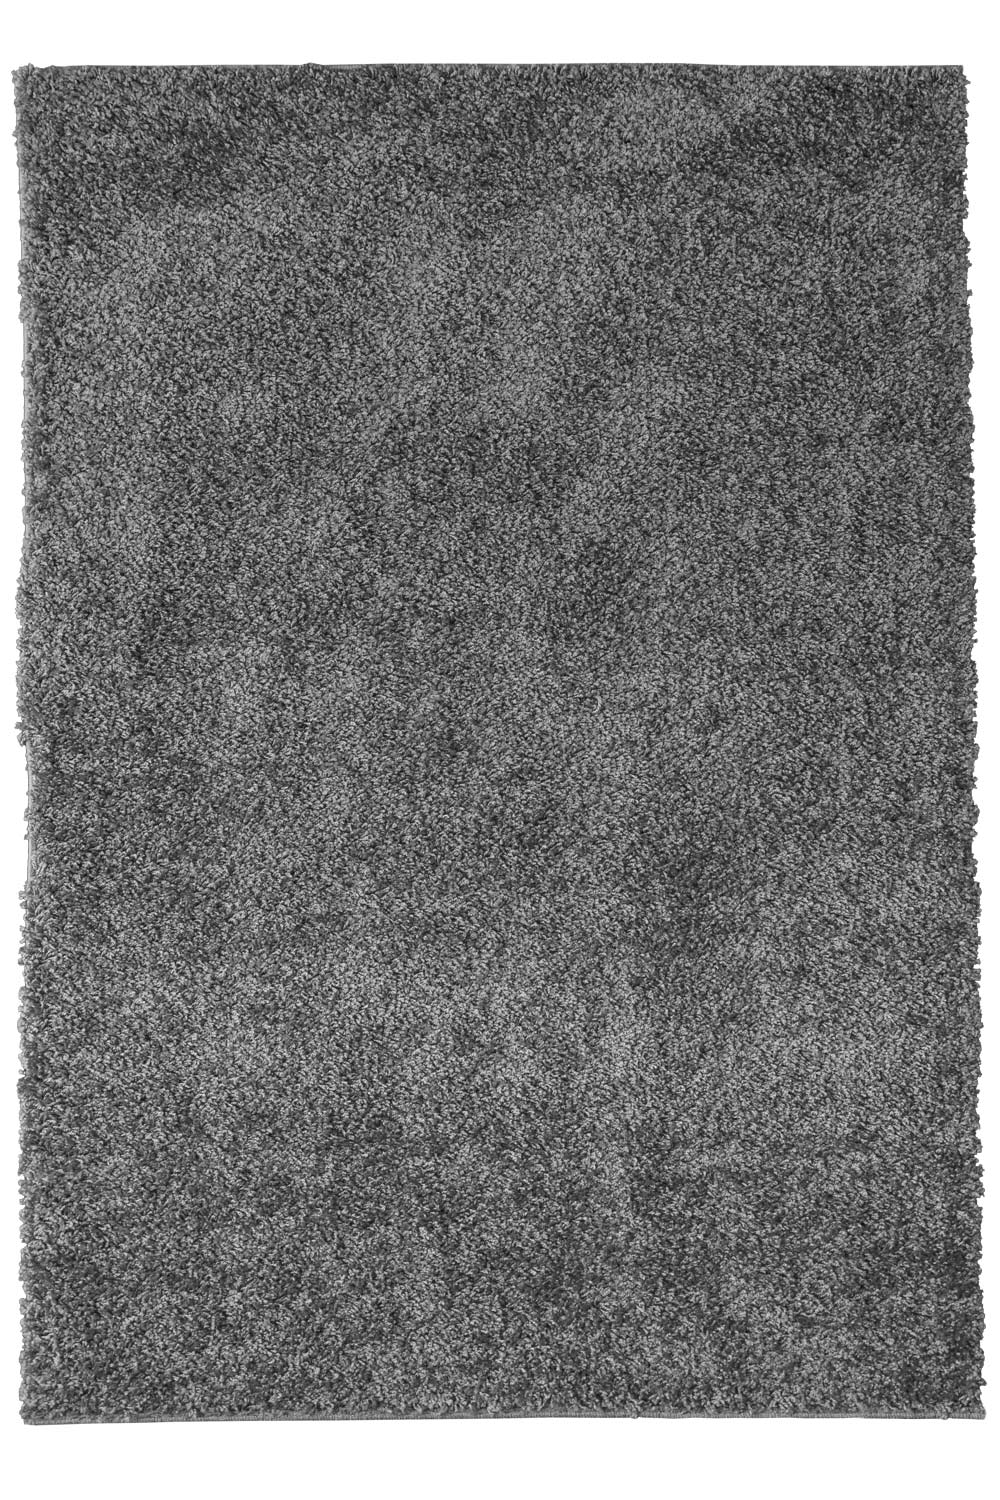 Kusový koberec LIFE SHAGGY 1500 grey 120x170 cm